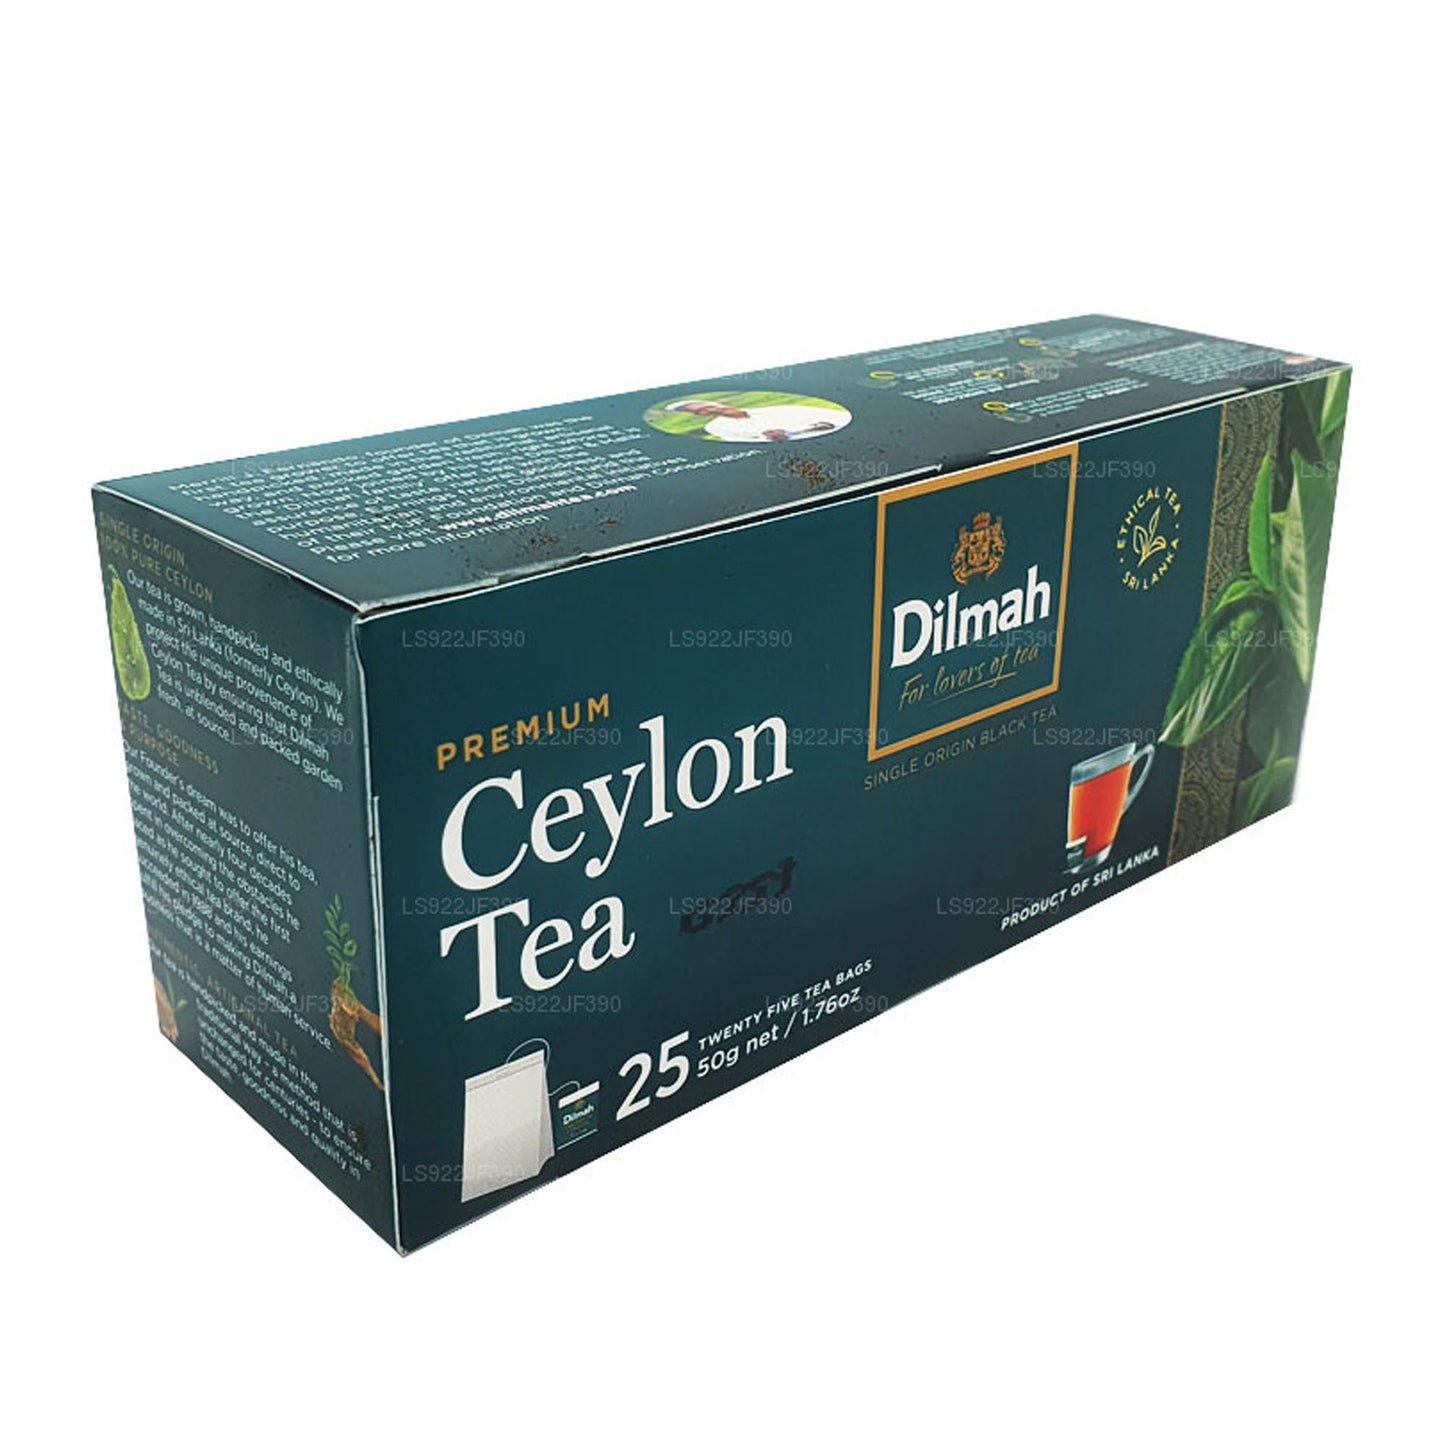 Dilmah Premium Ceylon Te